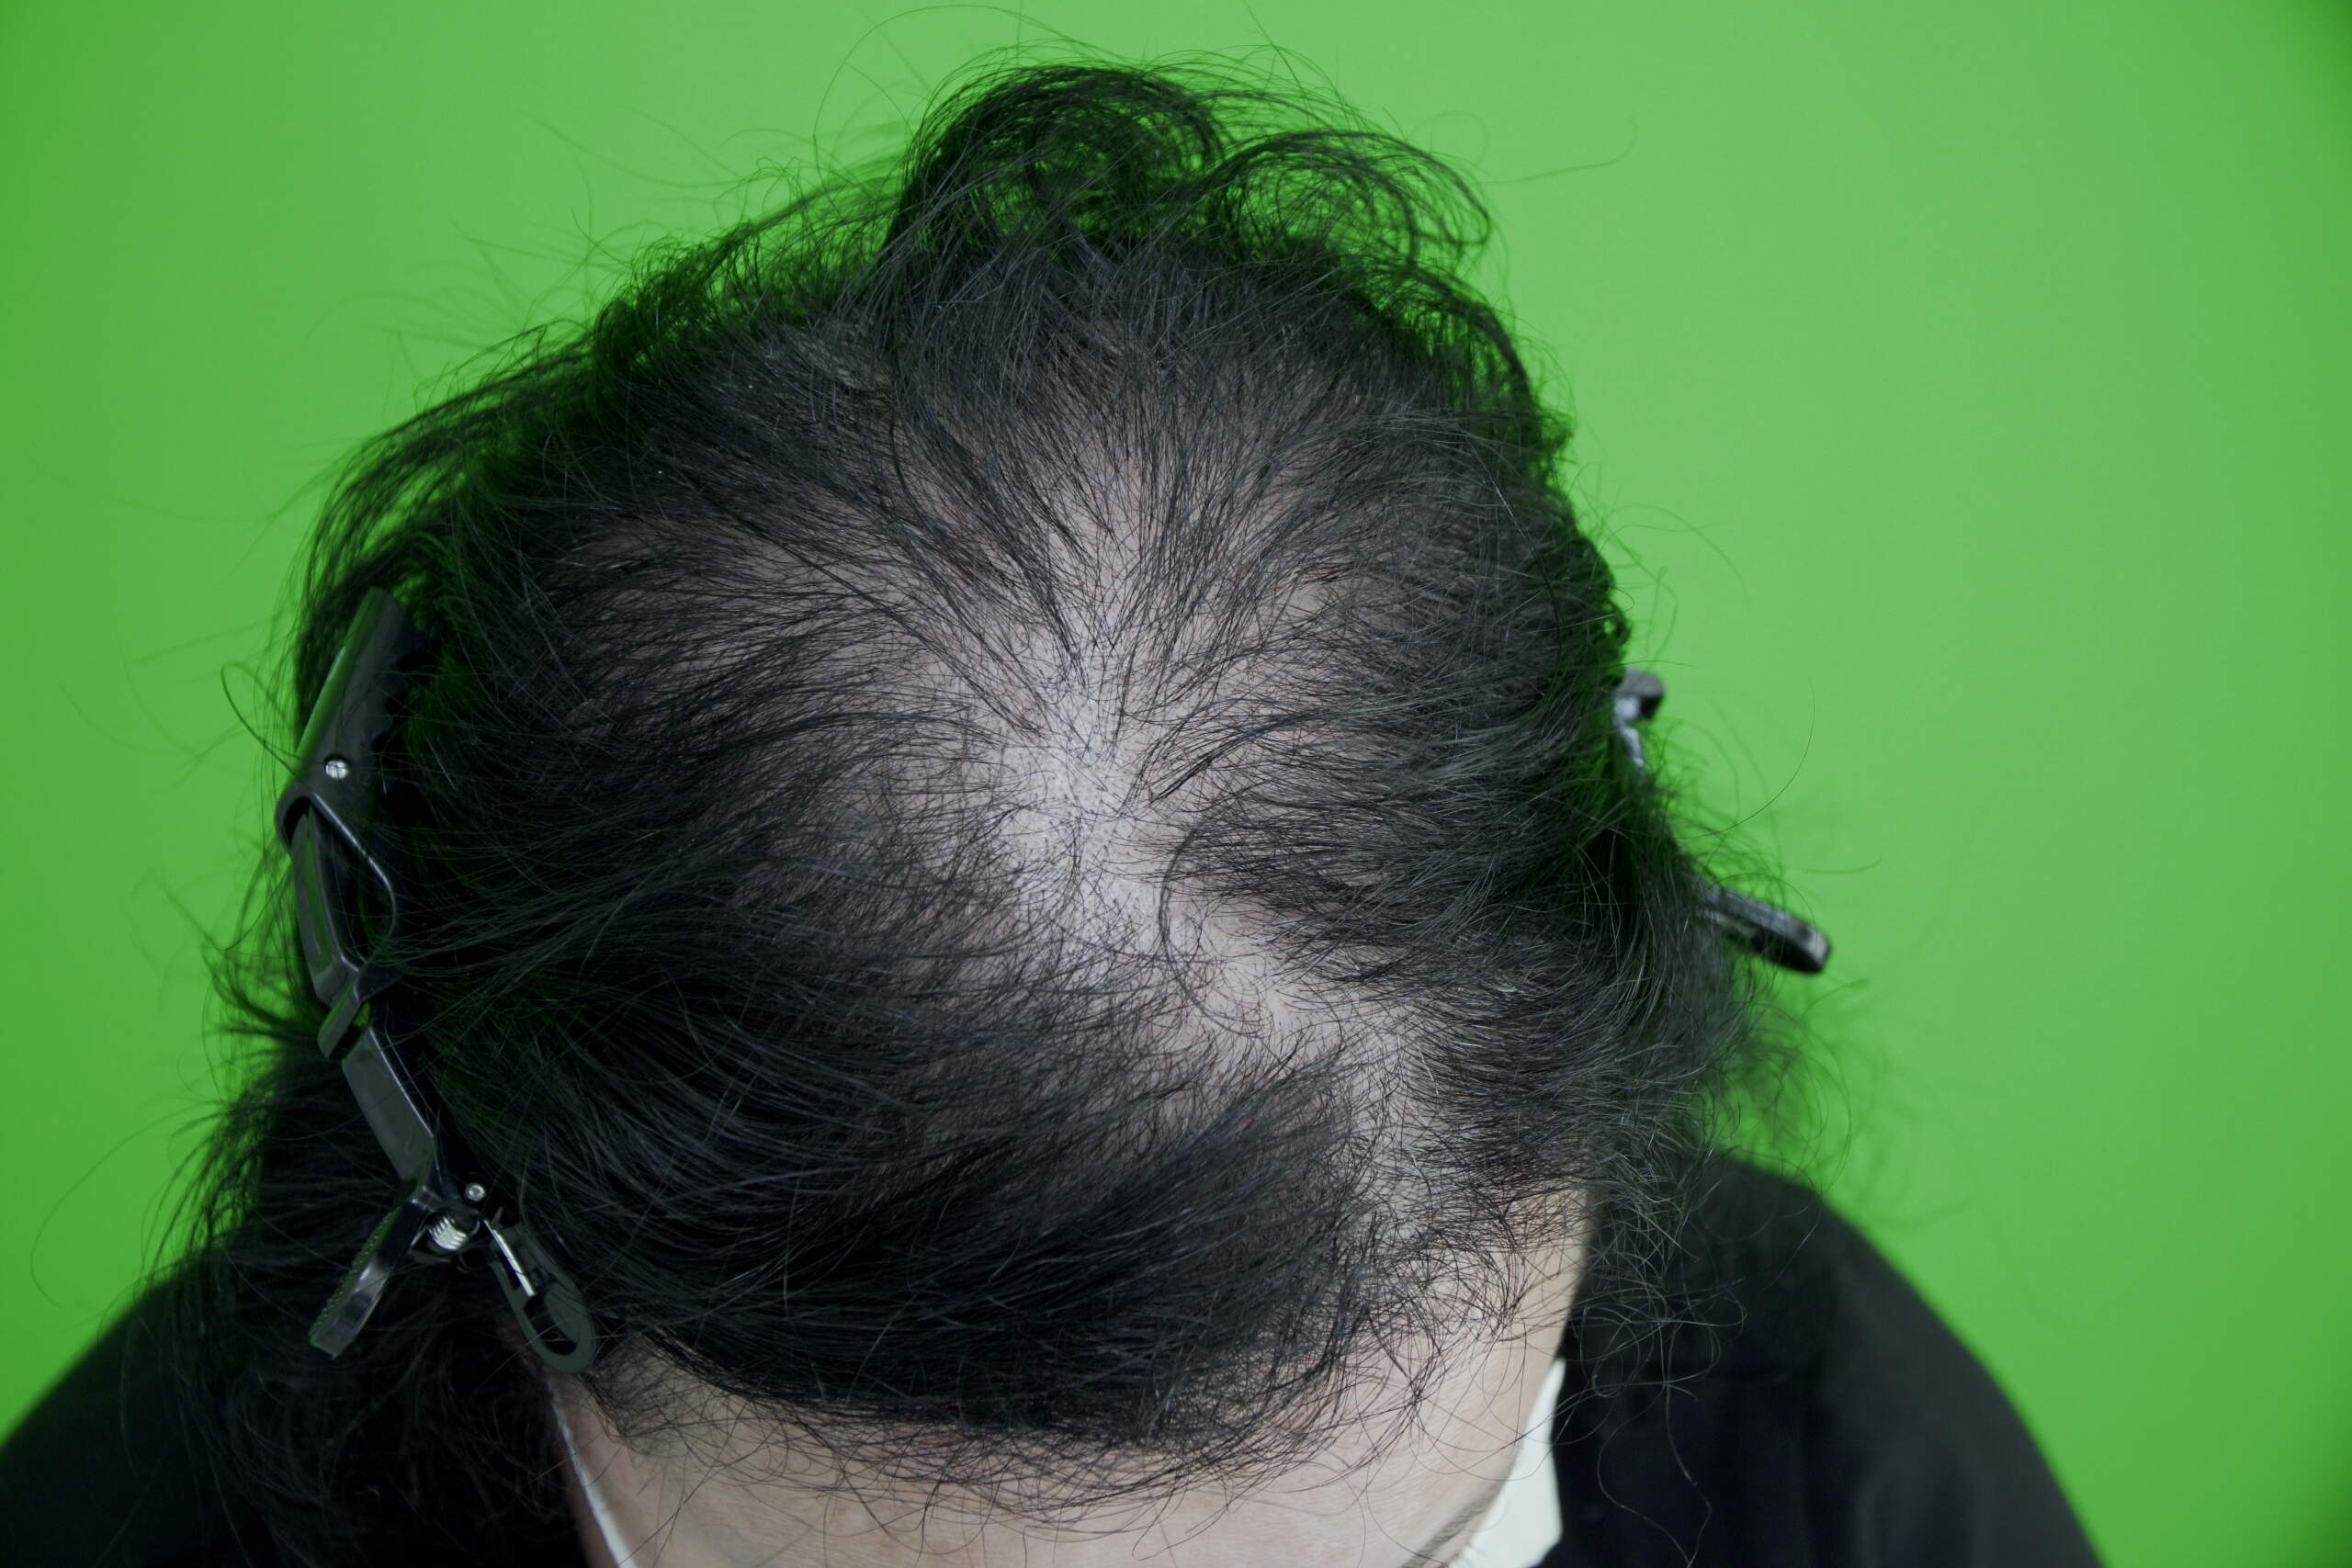 hair loss in women